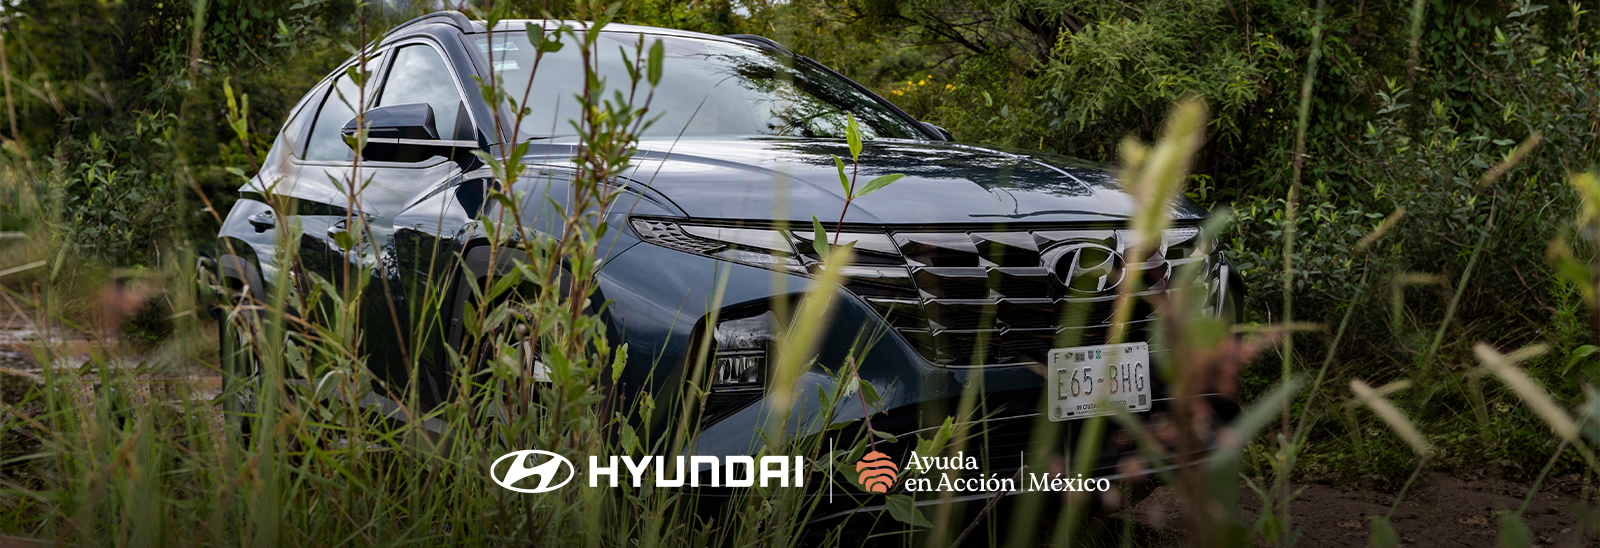 Hyundai ayuda en acción y Hyundai Motor de México SUV negra